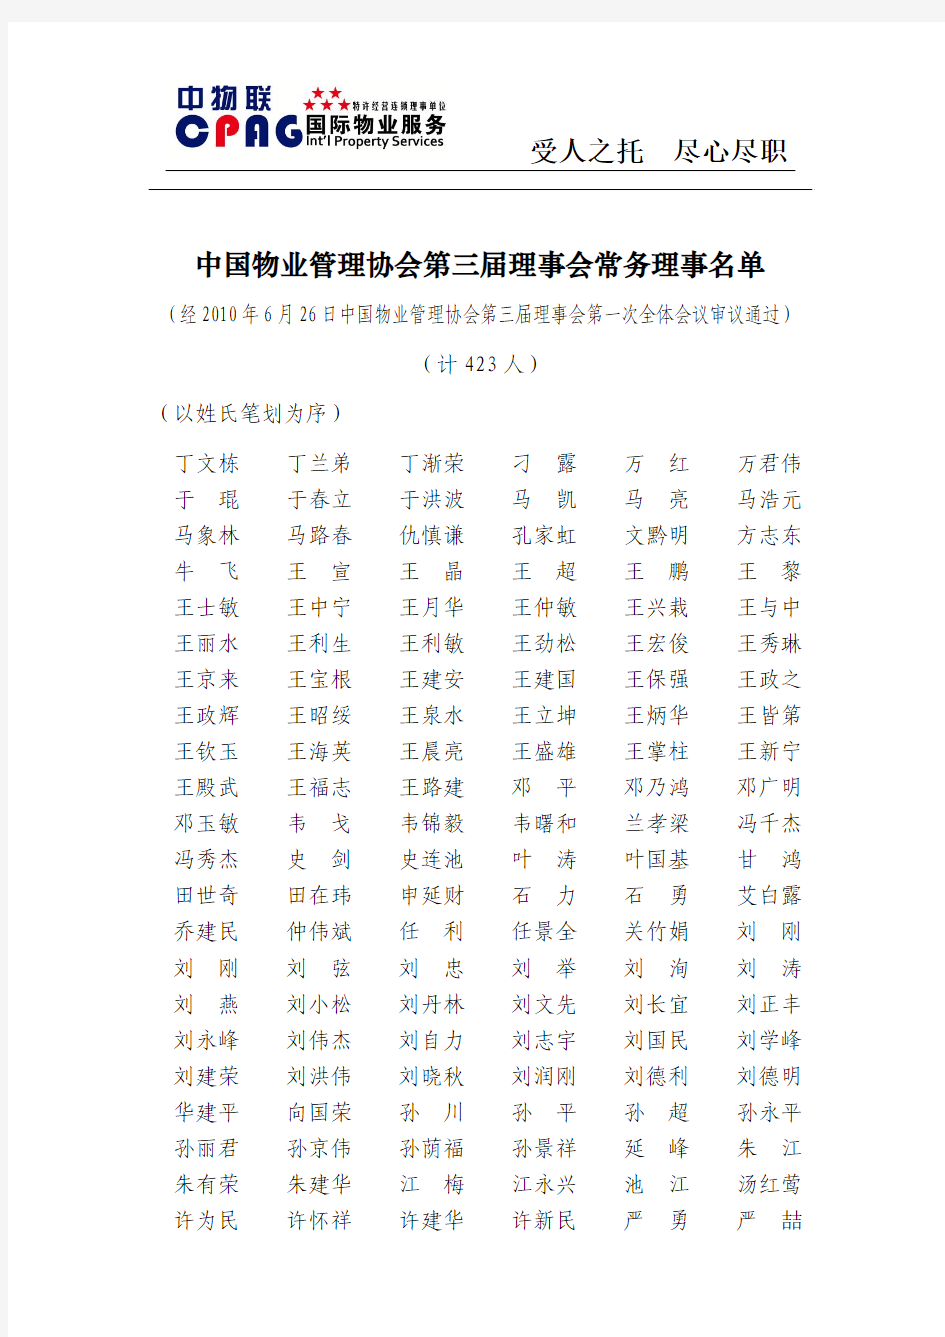 中国物业管理协会第三届理事会常务理事名单[1]